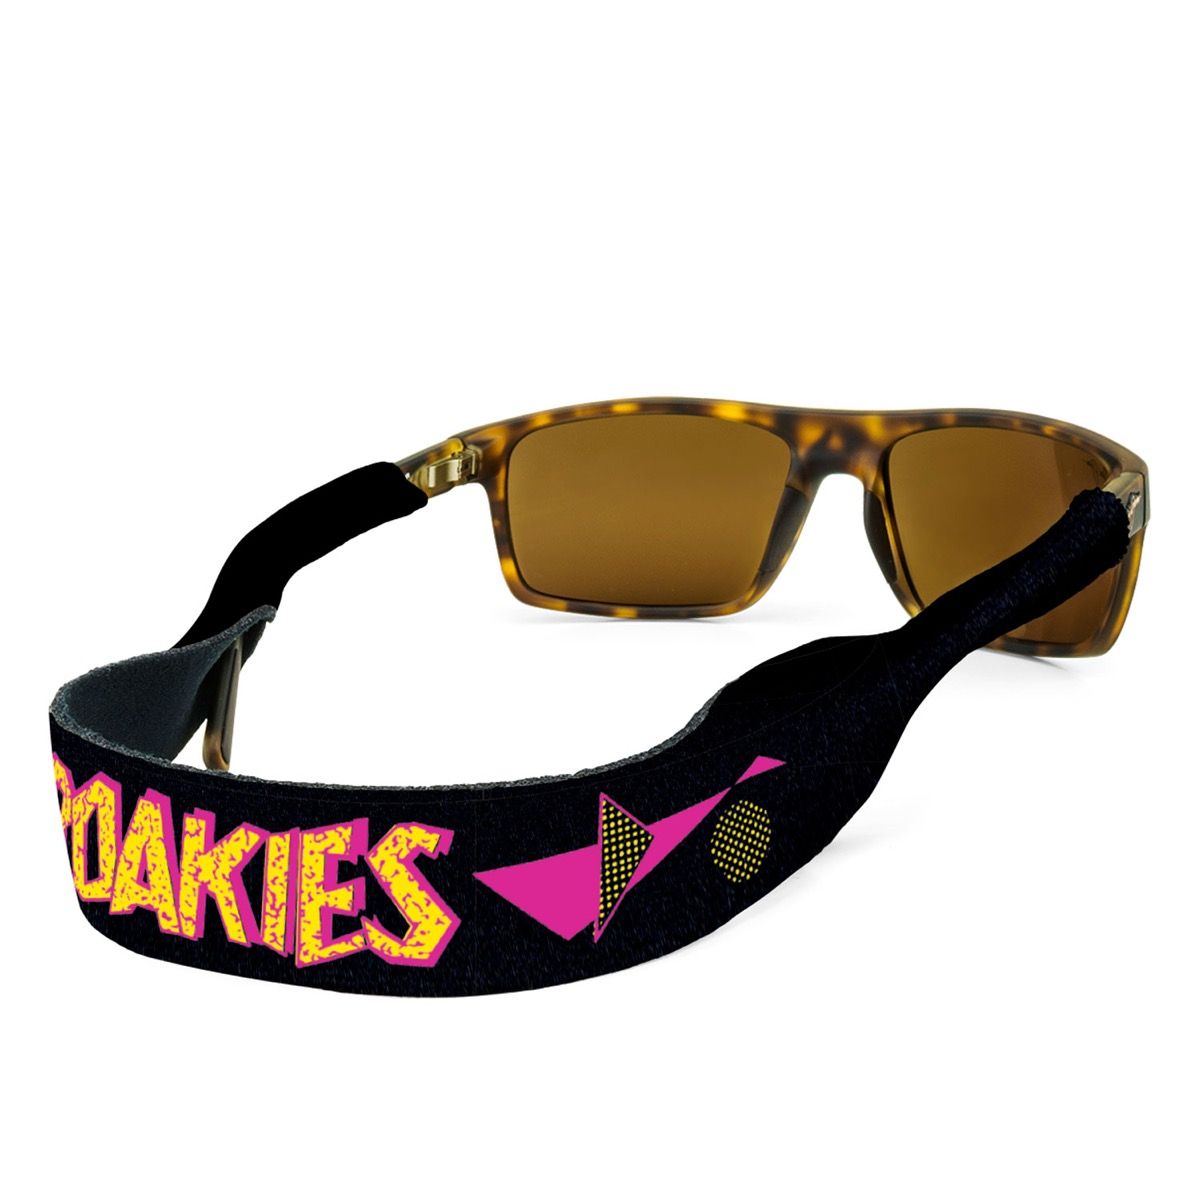 Croakies imetniki sončnih očal moda osemdesetih let